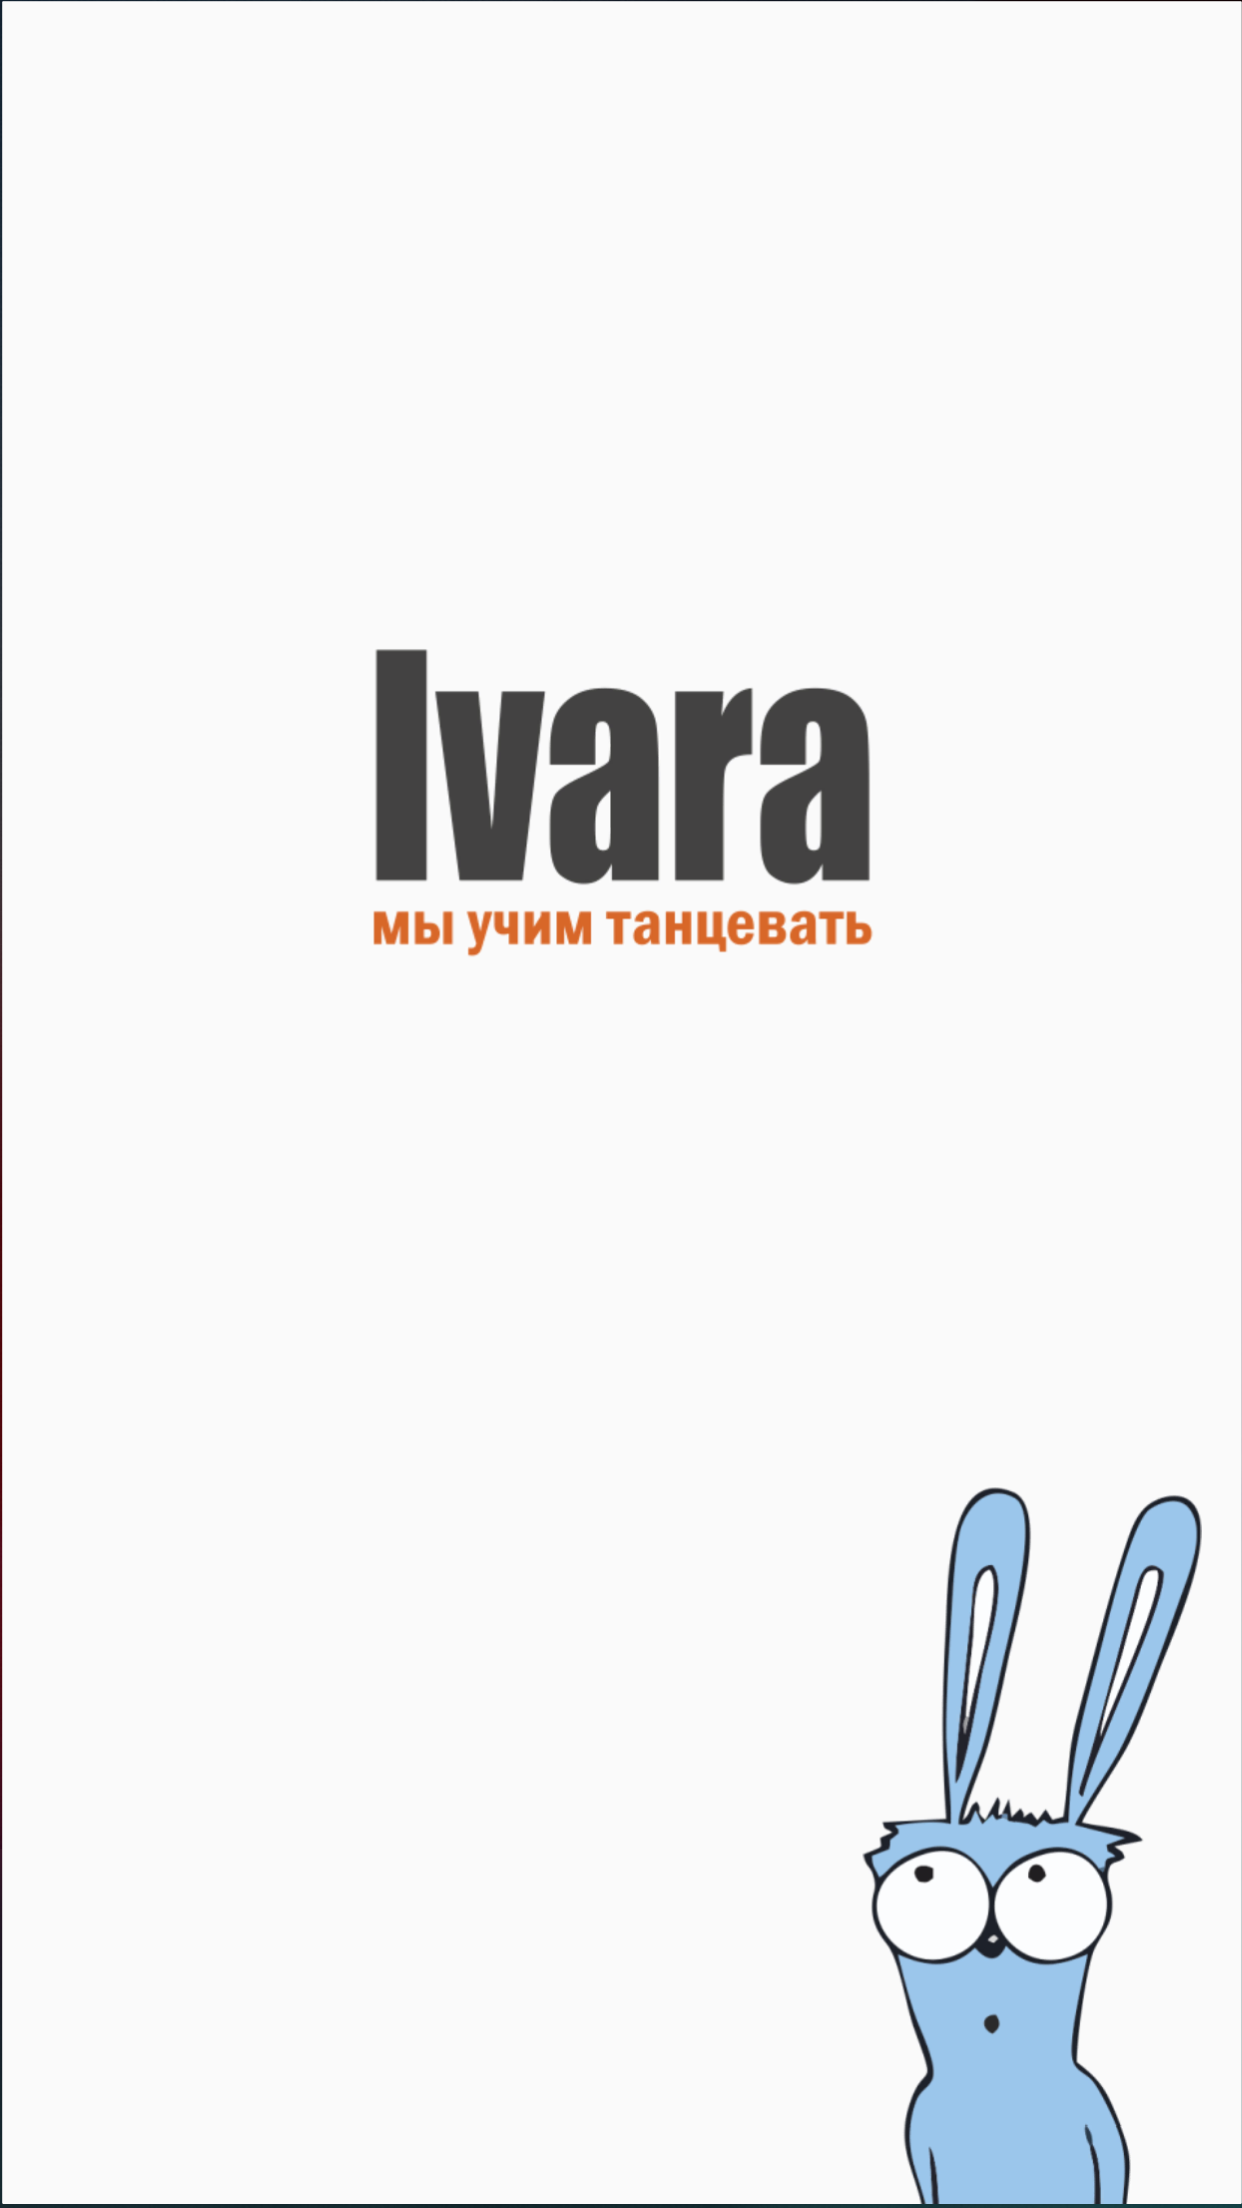 Ivara